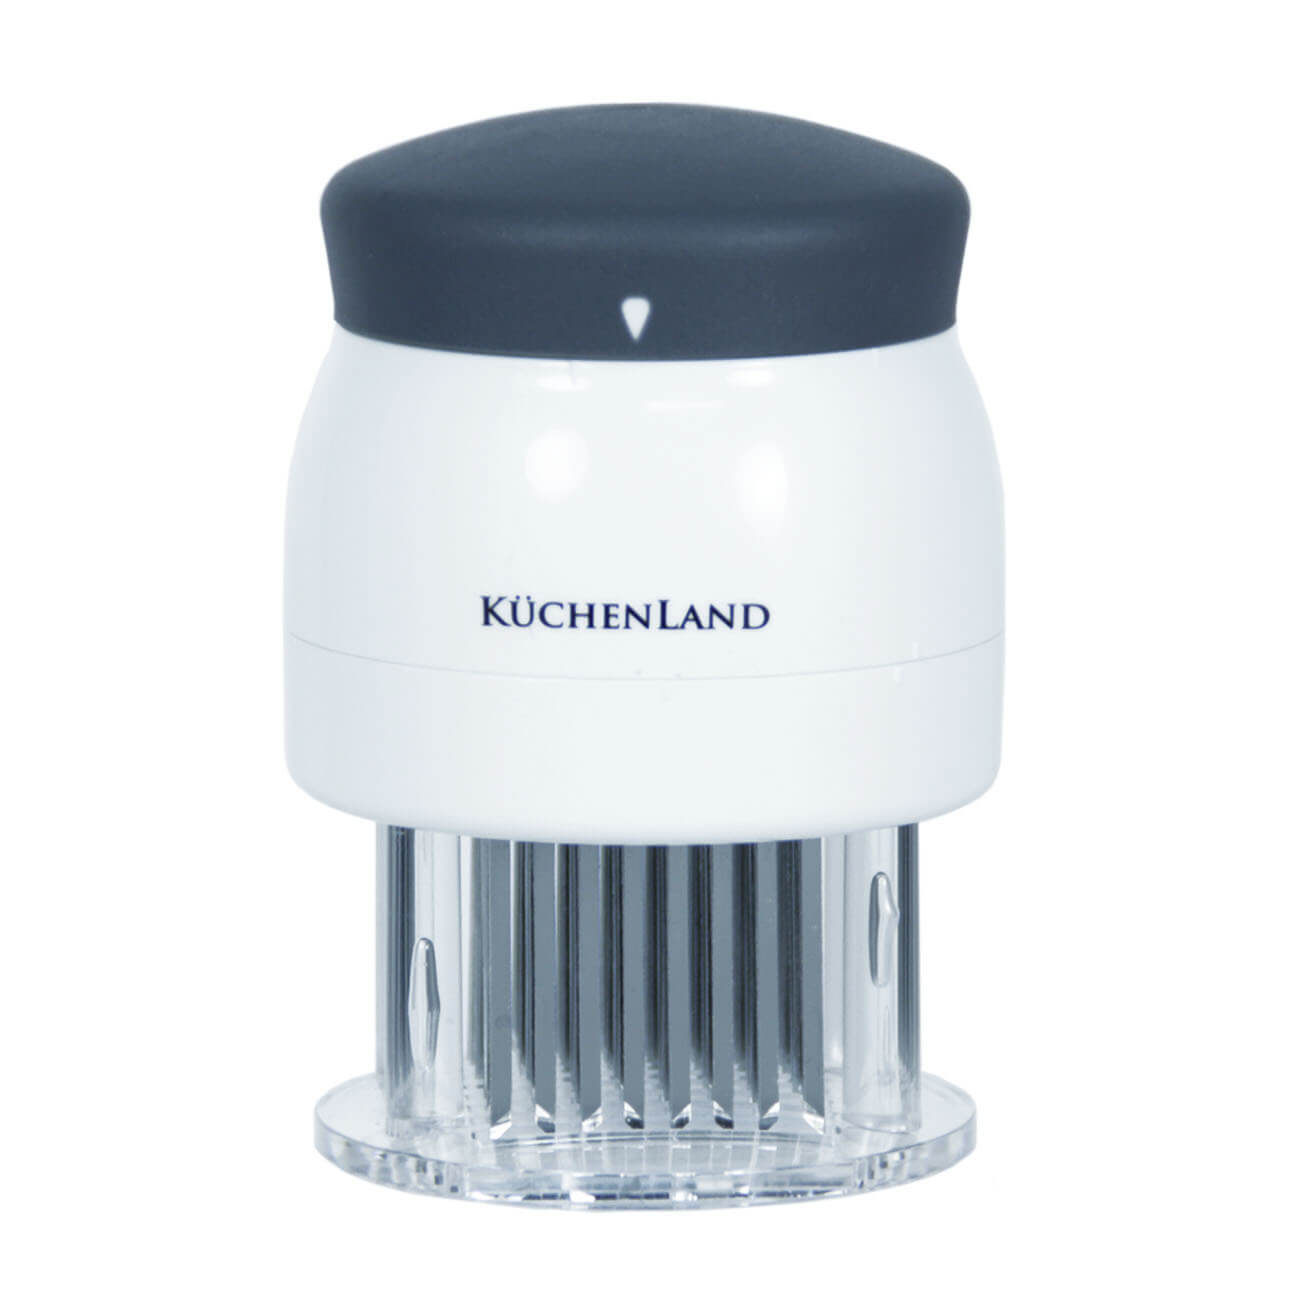 Kuchenland Тендерайзер, 8х11 см, 72 лезвия, сталь/пластик, белый, Grinding